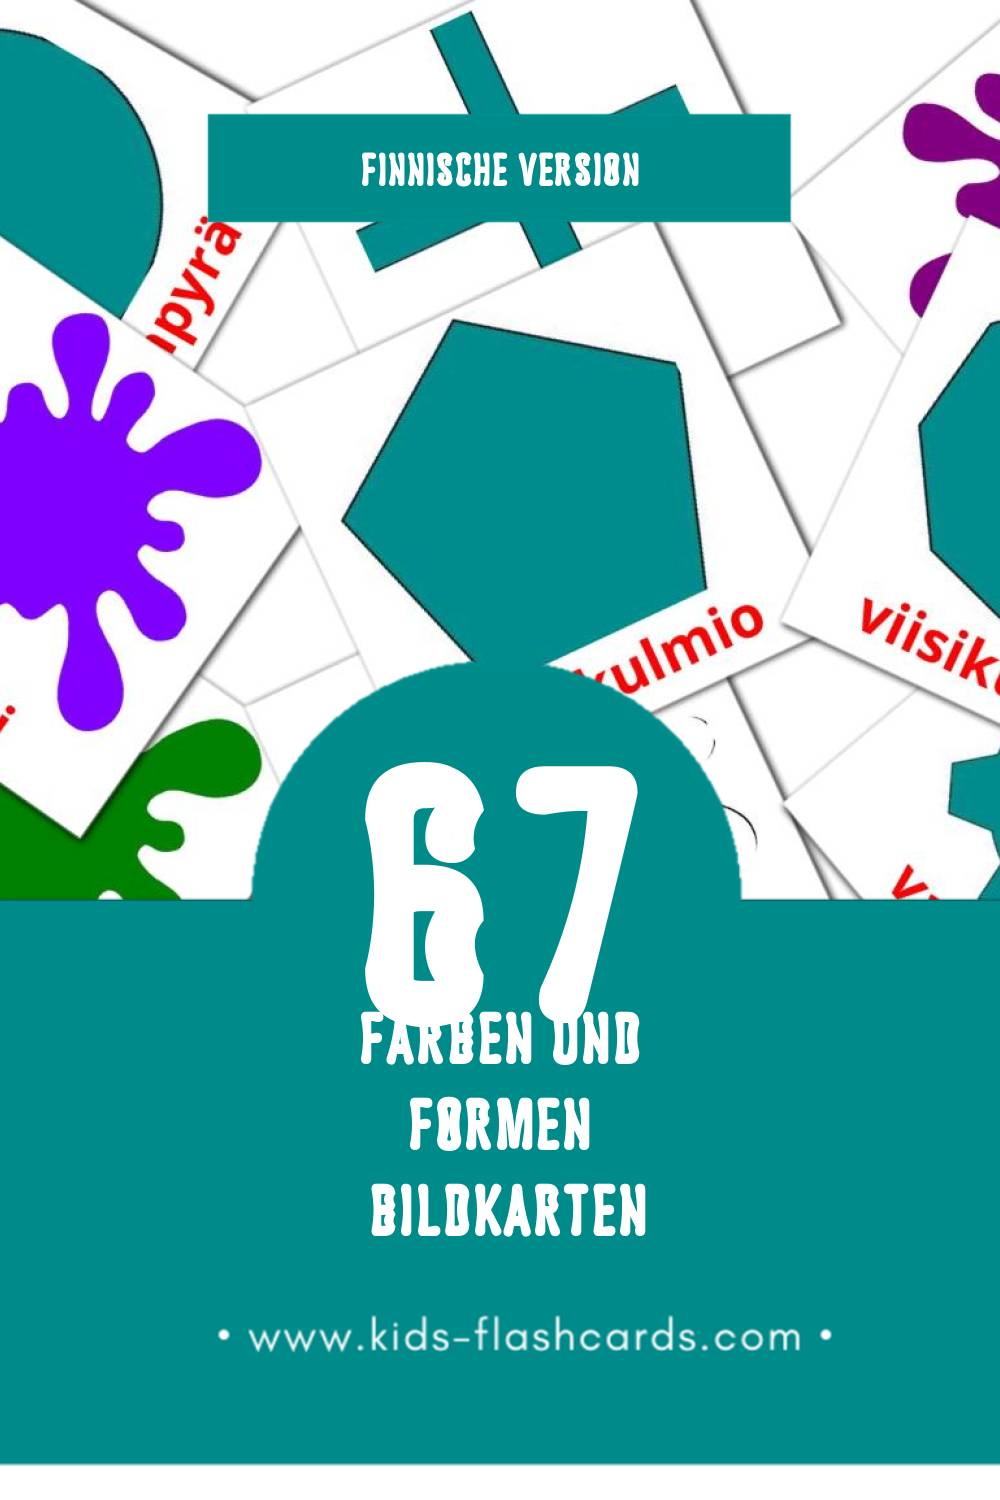 Visual Värejä ja muotoja Flashcards für Kleinkinder (12 Karten in Finnisch)